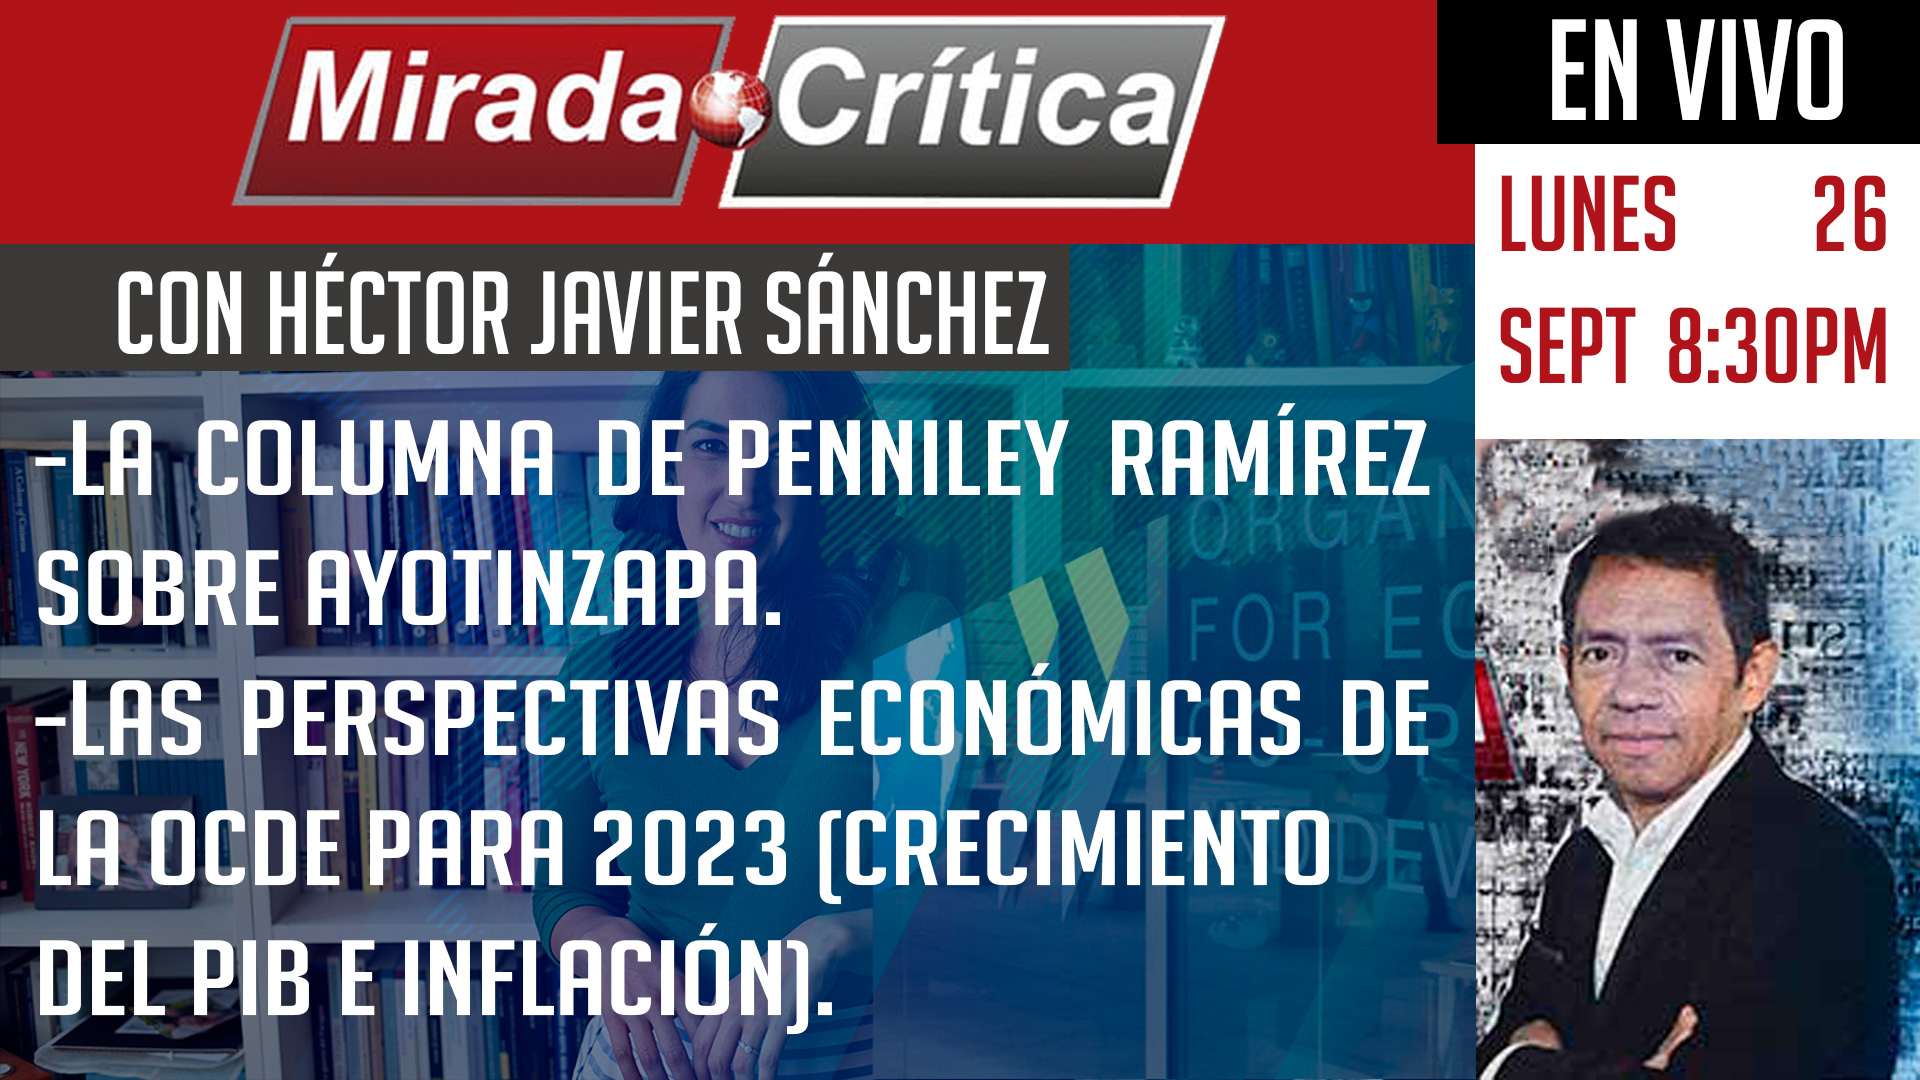 La columna de Penniley Ramírez sobre Ayotinzapa / perspectivas económicas de la OCDE - Mirada Crítica